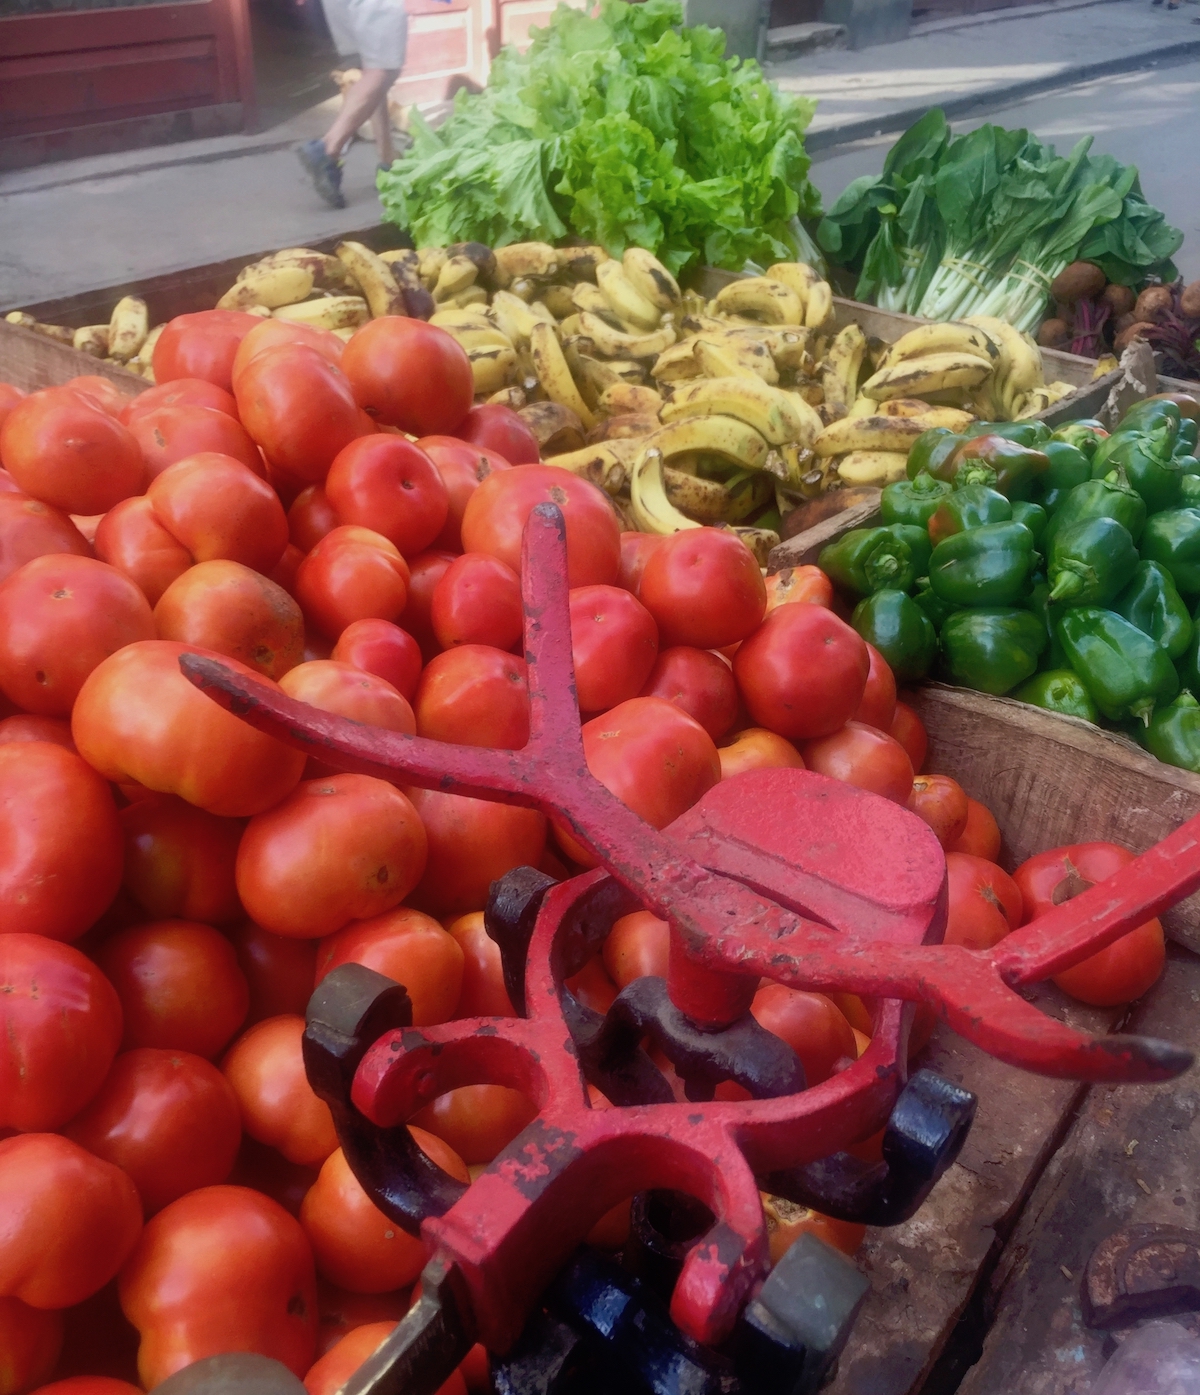 Cuba 2018-vegetables on a cart.jpg